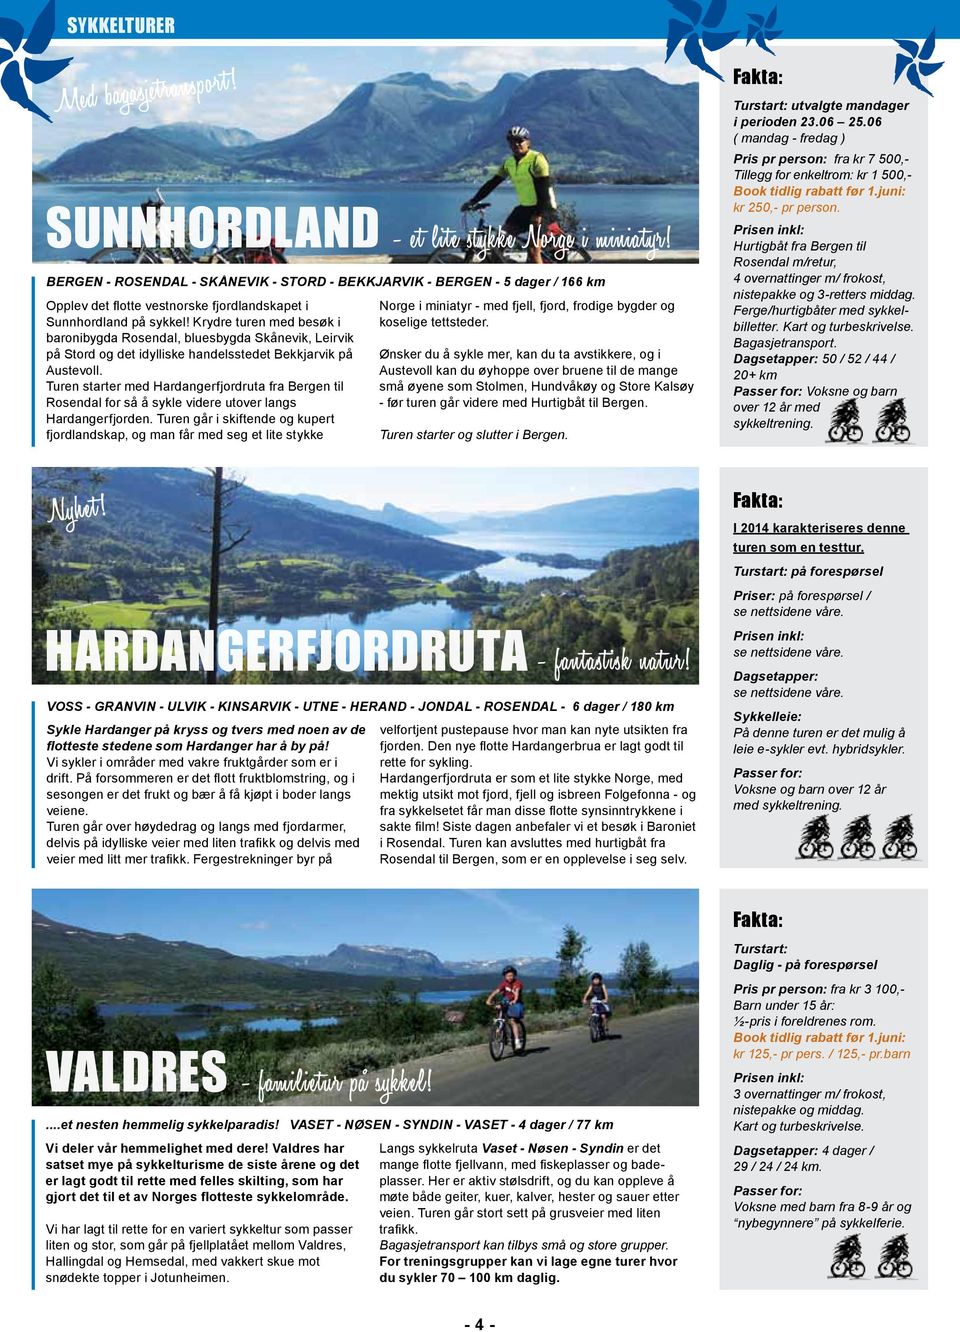 Turen starter med Hardangerfjordruta fra Bergen til Rosendal for så å sykle videre utover langs Hardangerfjorden.